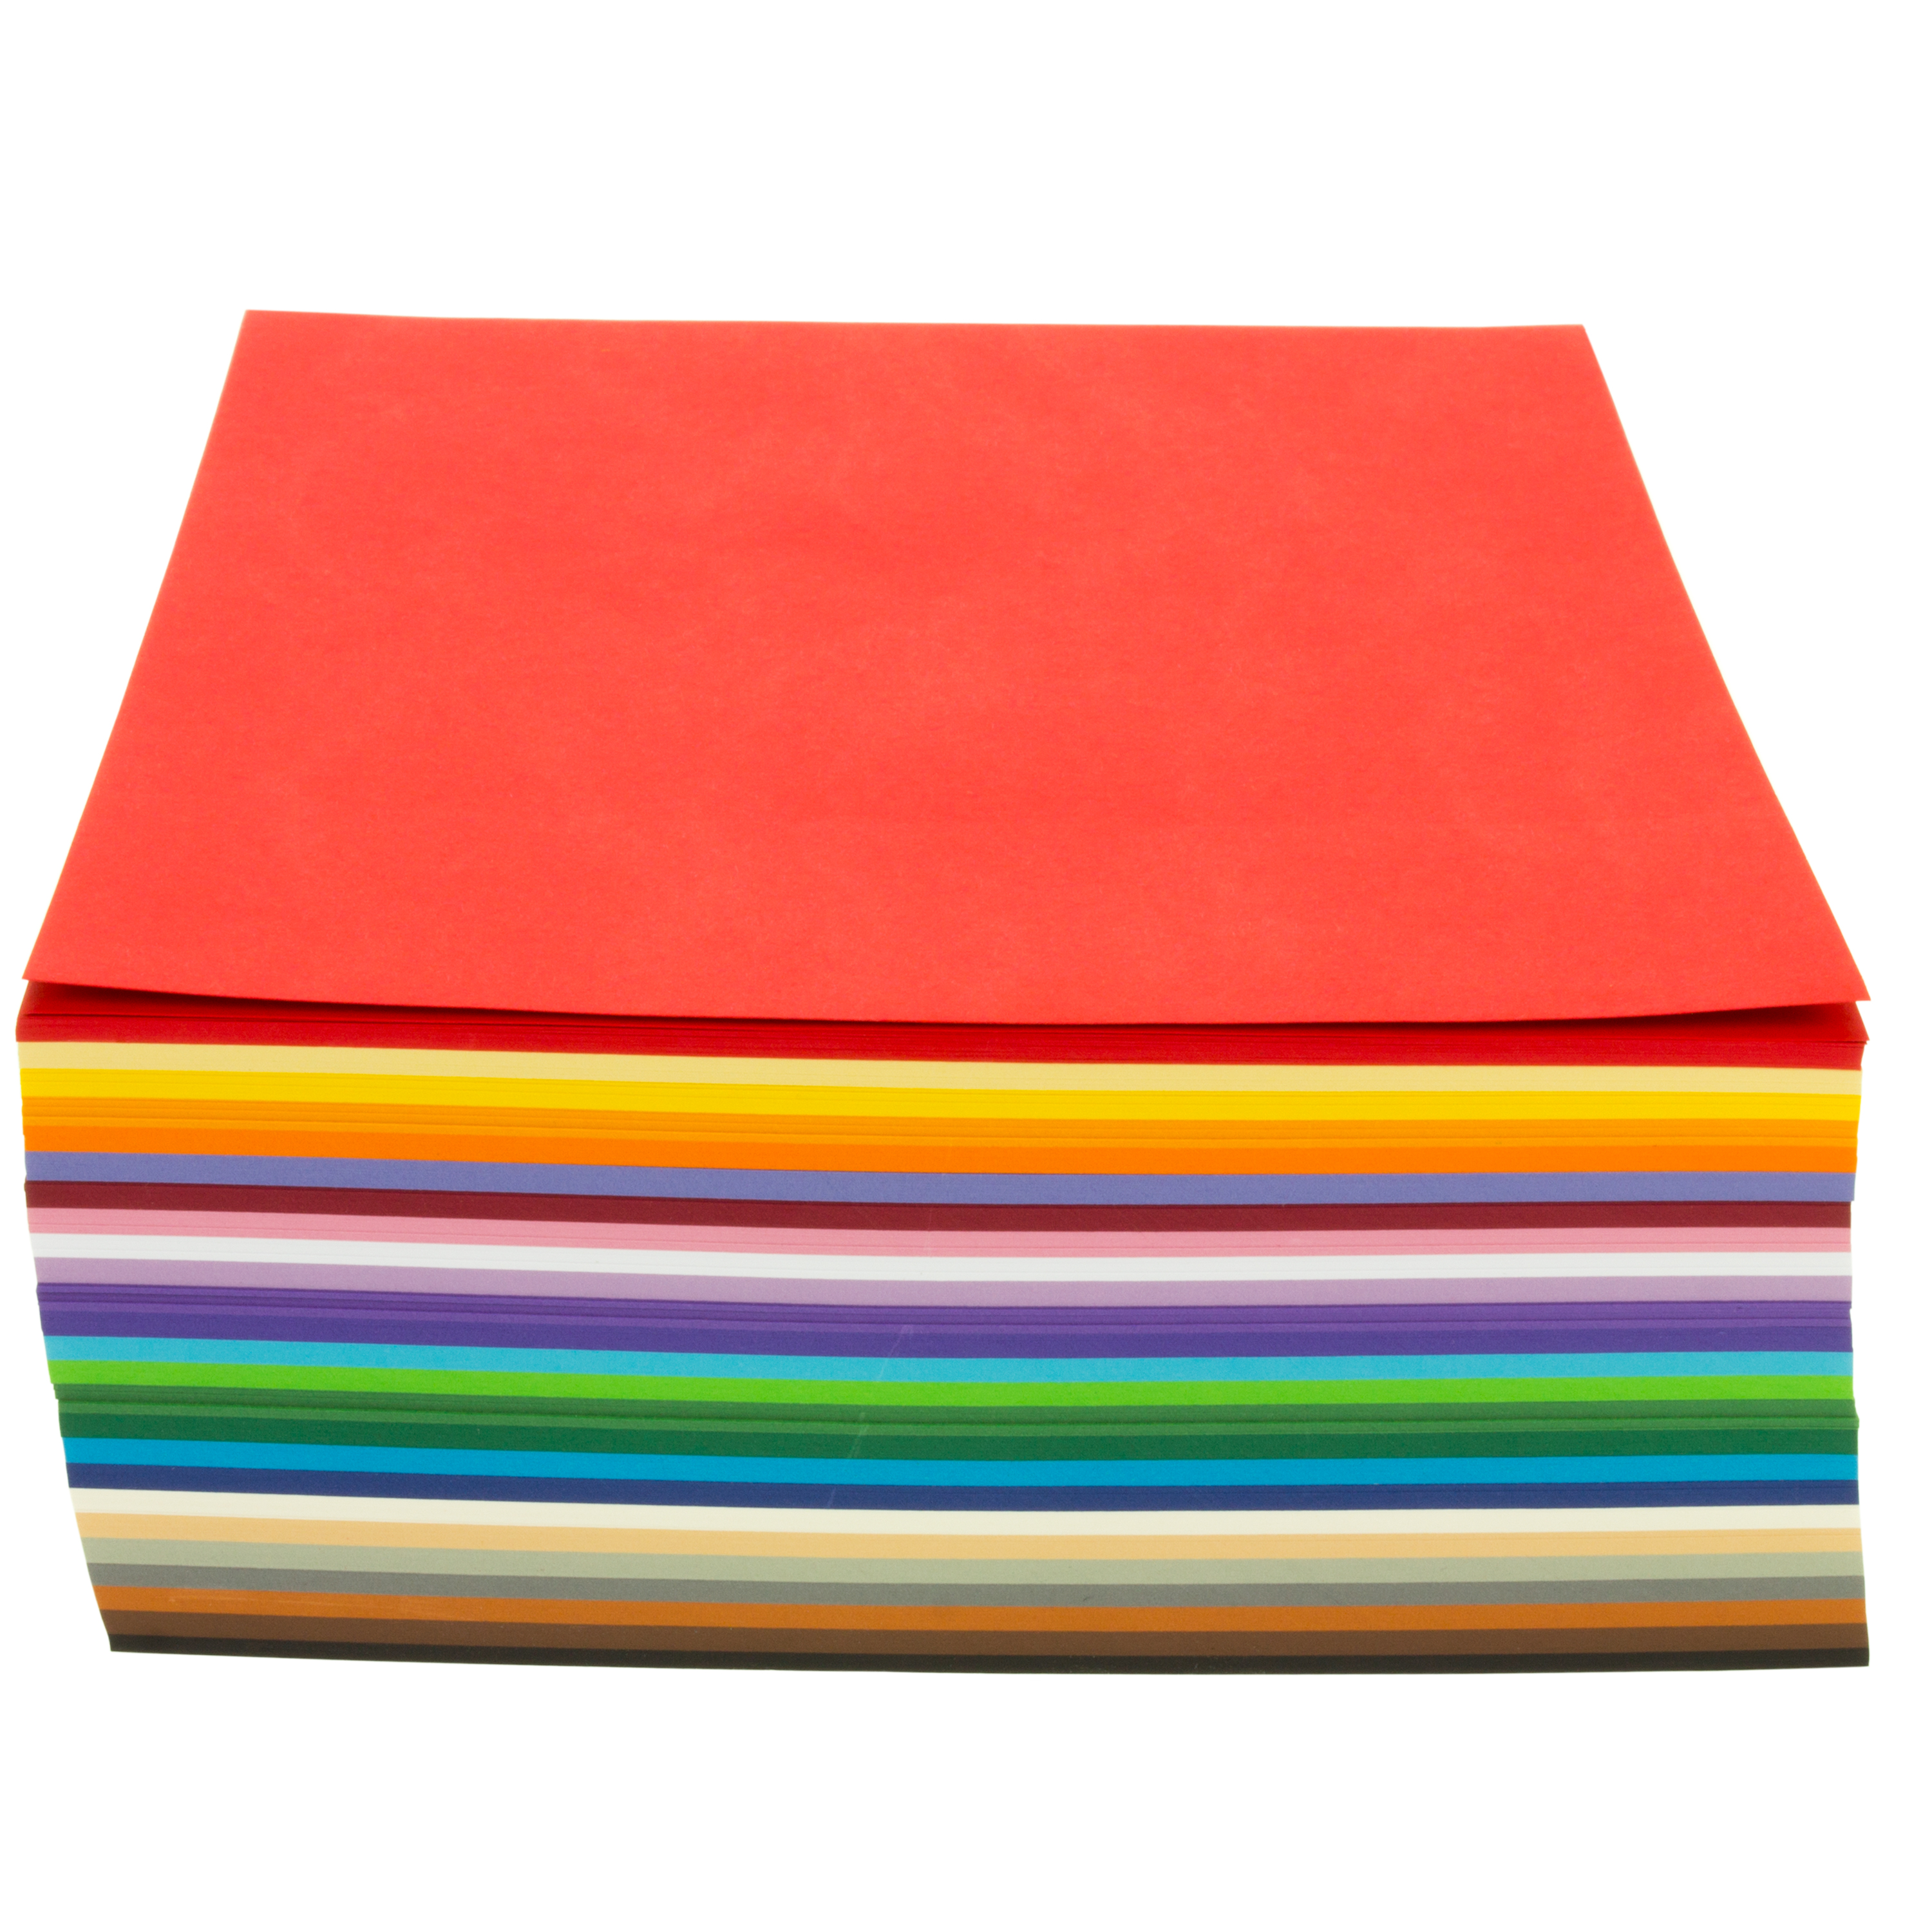 Tonpapier farbig sortiert, 130 g/m², DIN A4